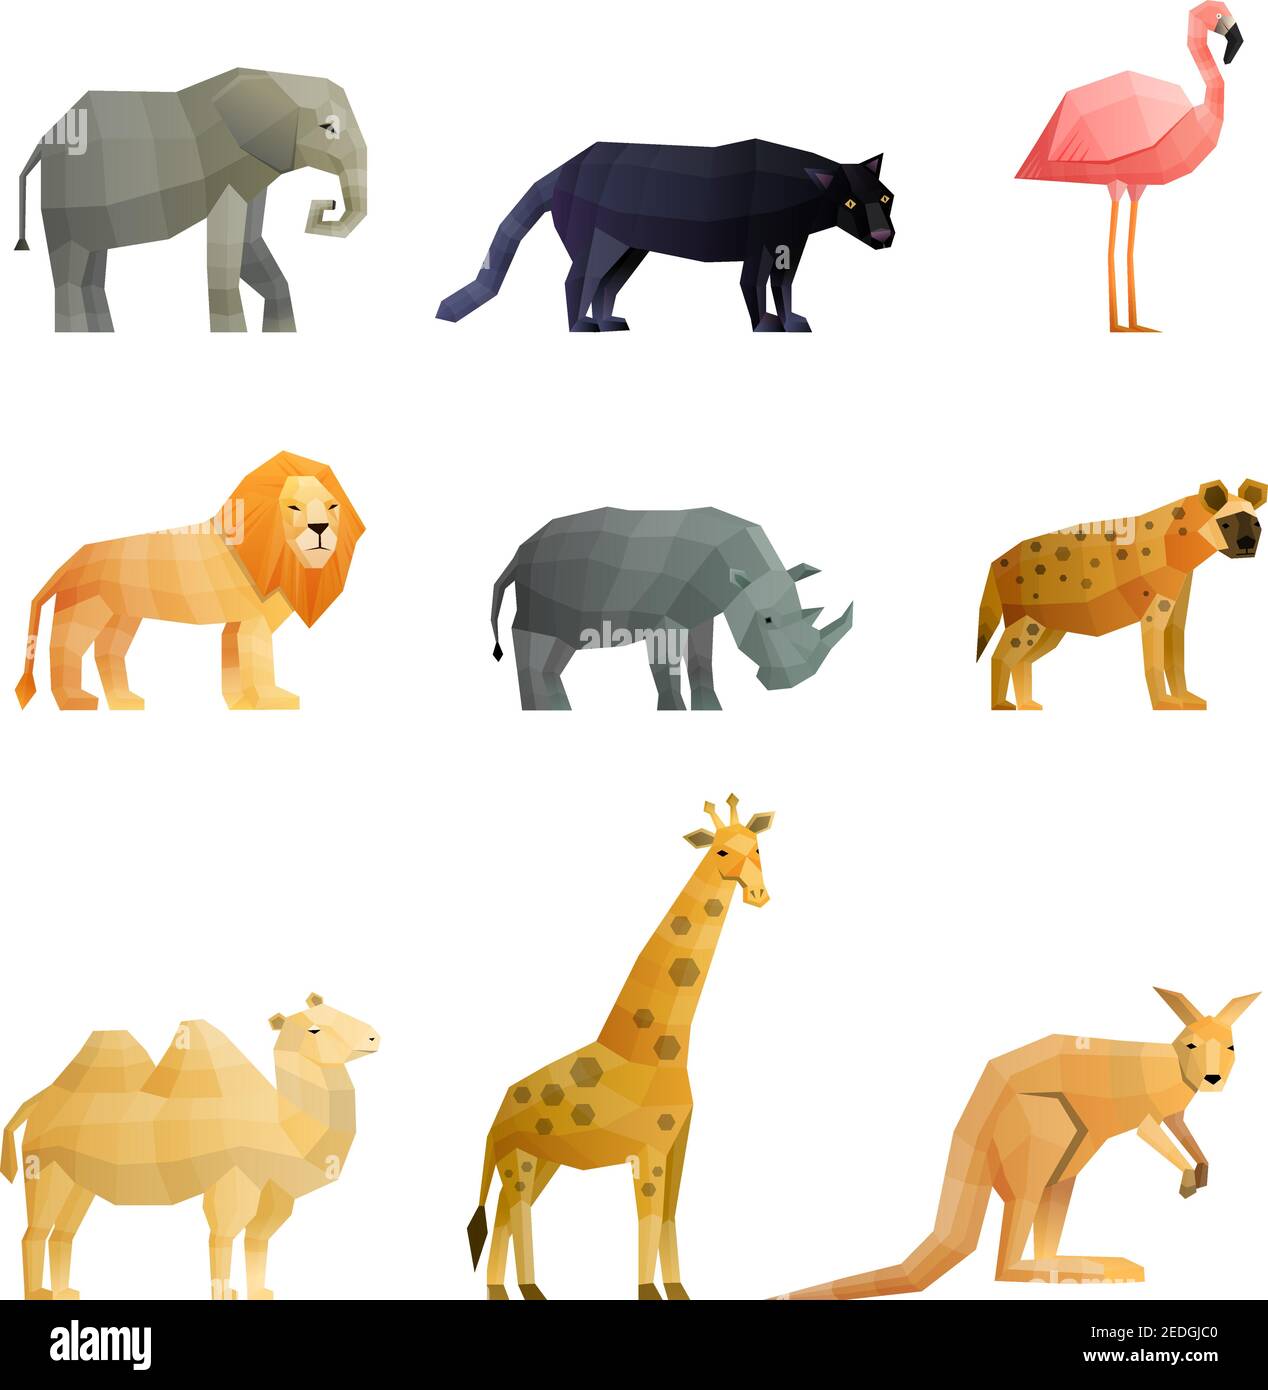 Südländische wilde Tiere polygonale Ikonen mit Giraffe Kängurulöwe gesetzt Kamel und rosa Flamingo isoliert Vektor-Illustration Stock Vektor